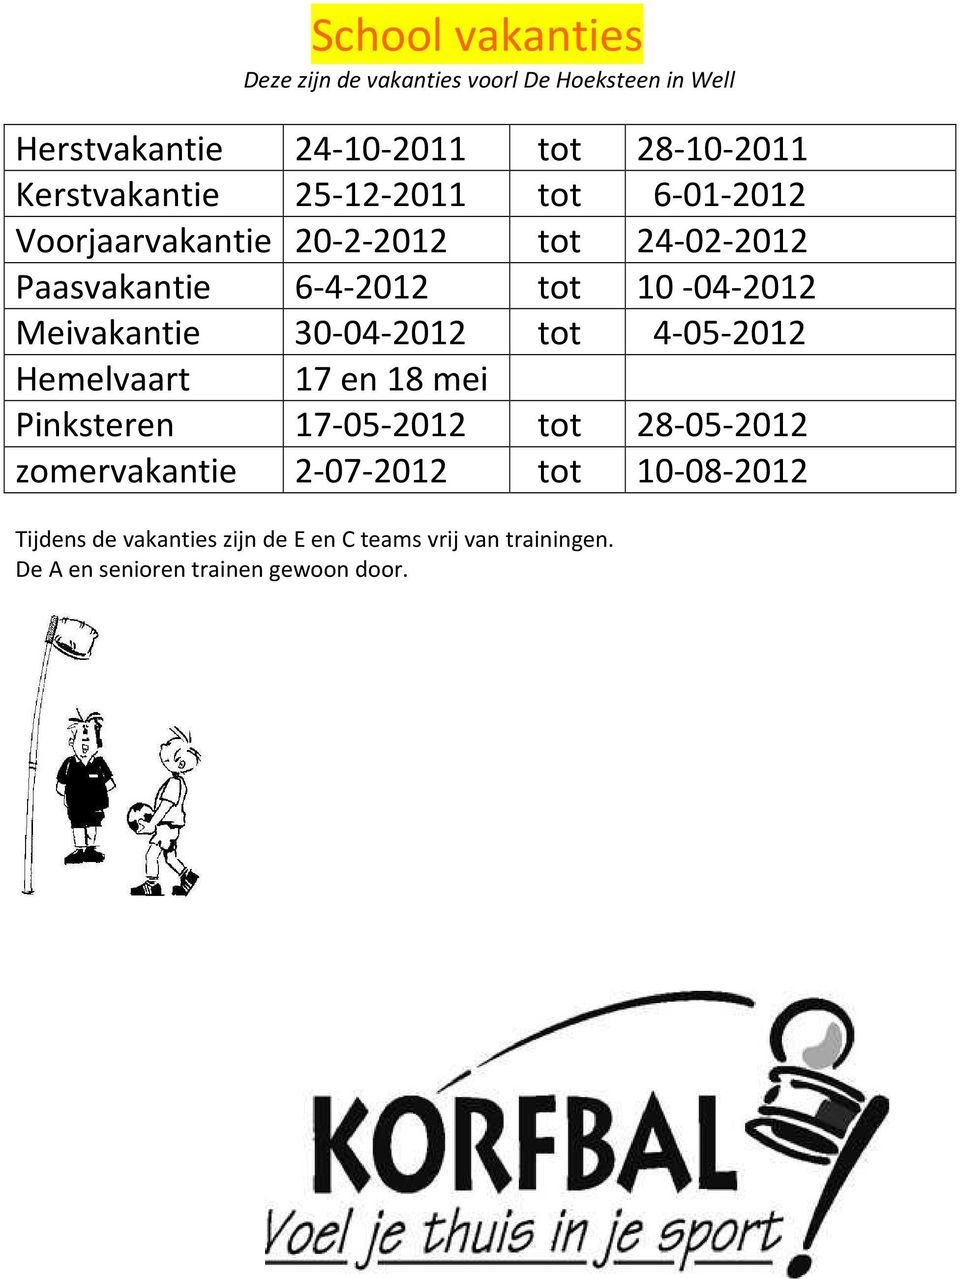 10-04-2012 Meivakantie 30-04-2012 tot 4-05-2012 Hemelvaart 17 en 18 mei Pinksteren 17-05-2012 tot 28-05-2012